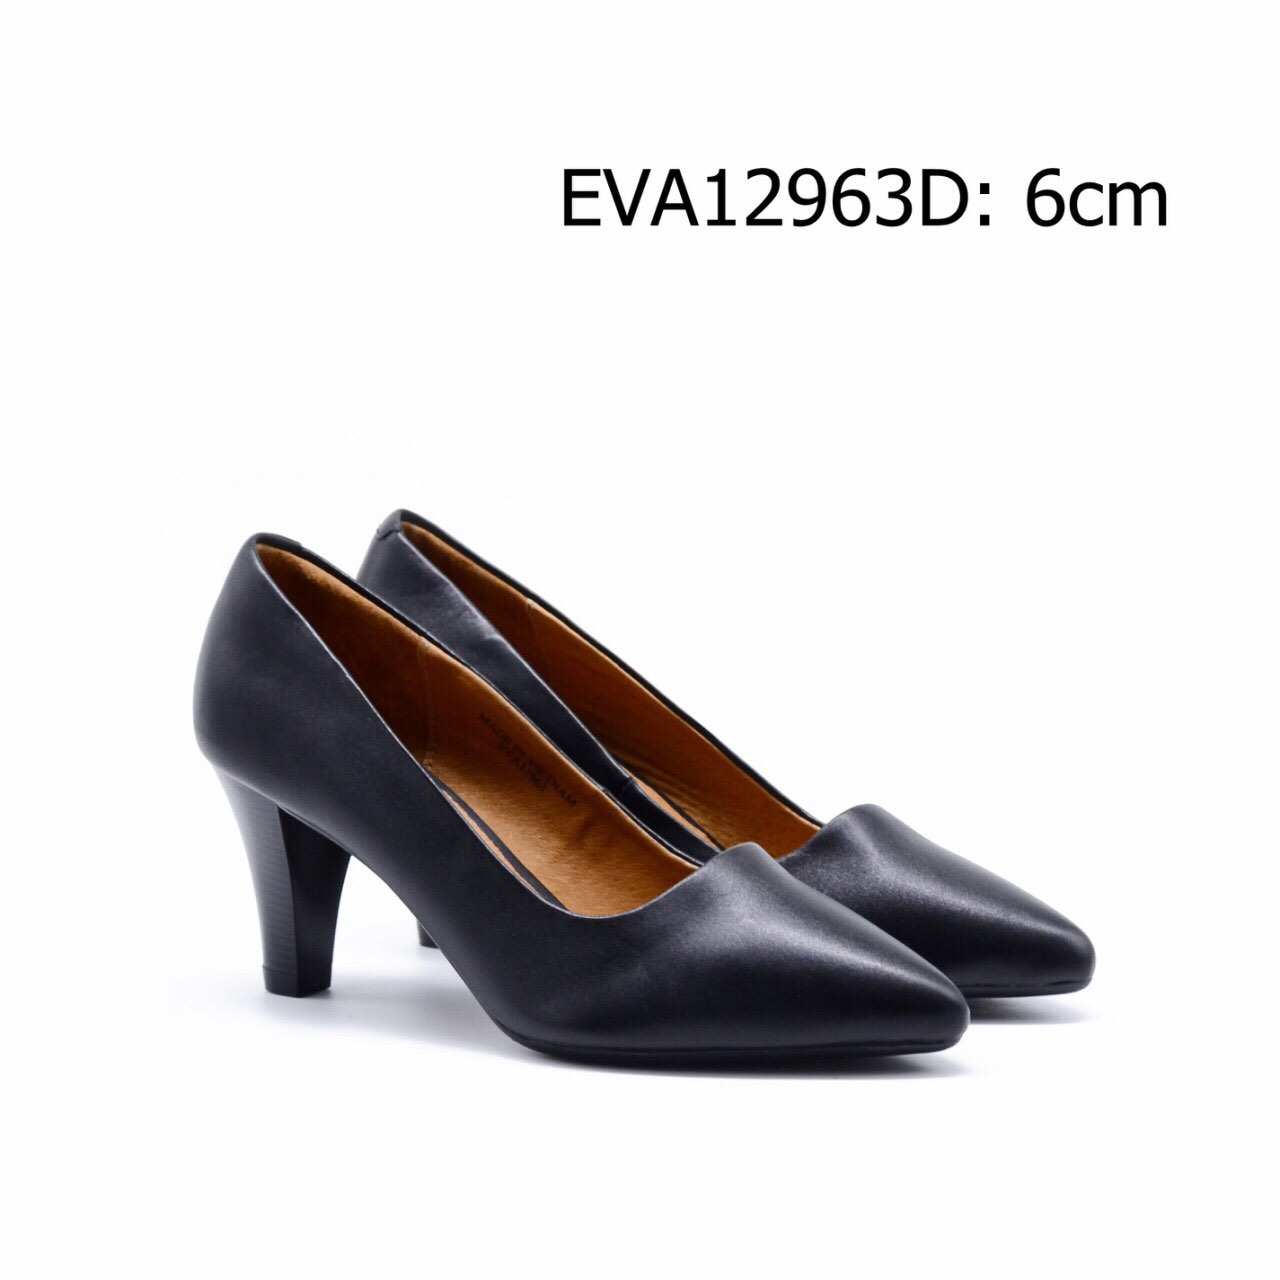 Giày cao gót da thật EVA12963D kiểu dáng thanh lịch, tôn dáng